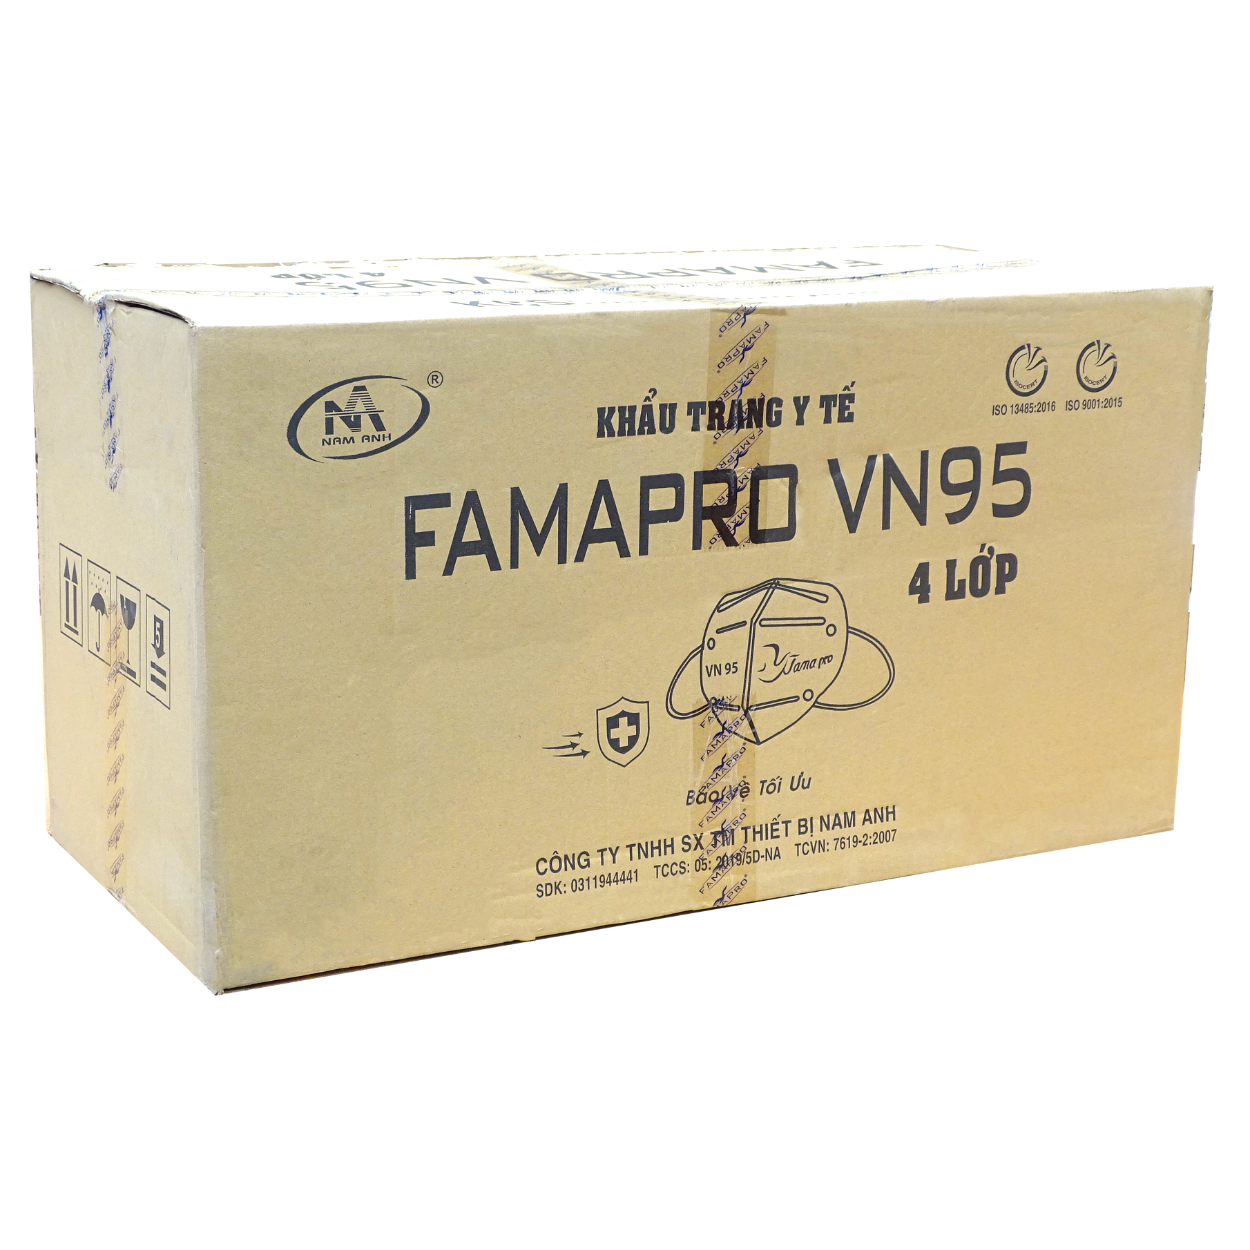 Mascarilla Famapro VN95 para adulto color blanco caja master